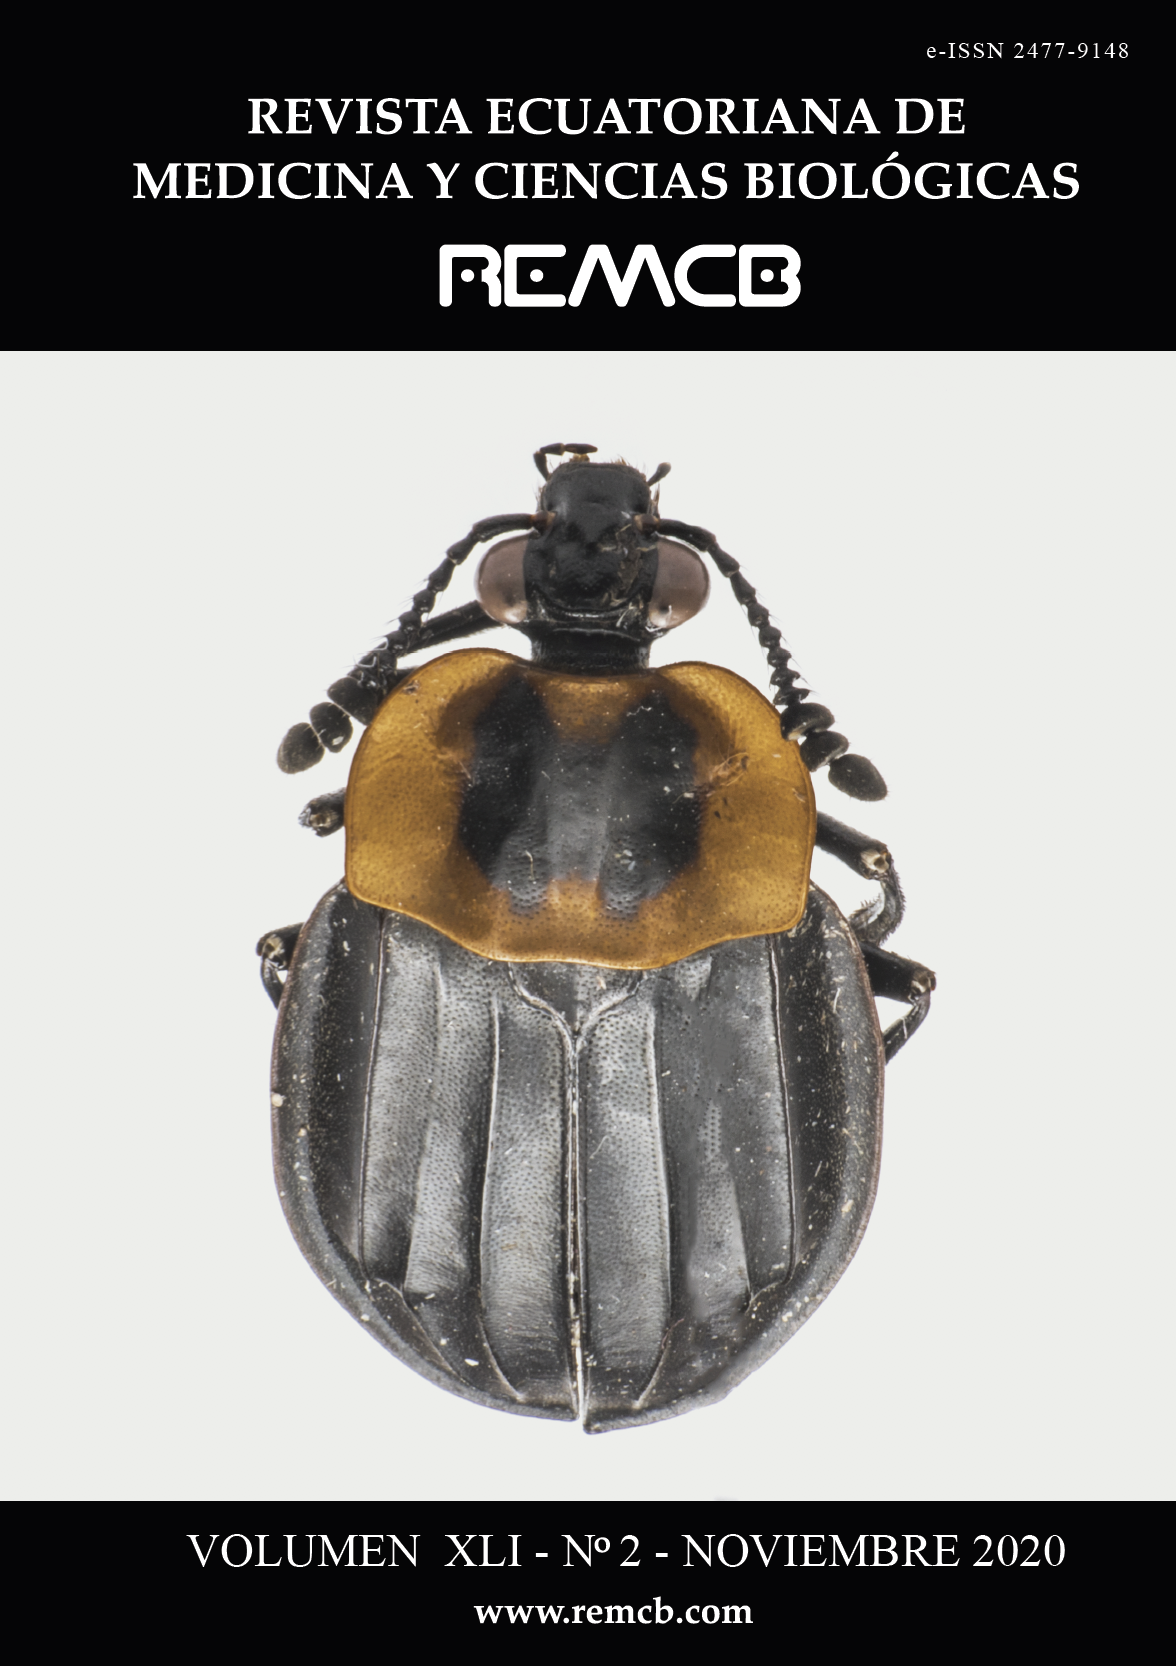 Fotografía de portada: Los Silphidae son una familia de coleópteros muchos de los cuales se alimentan de carne muerta. Entierran pequeños trozos de carne donde sus huevos son depositados por esta razón son conocidos como escarabajos enterradores.